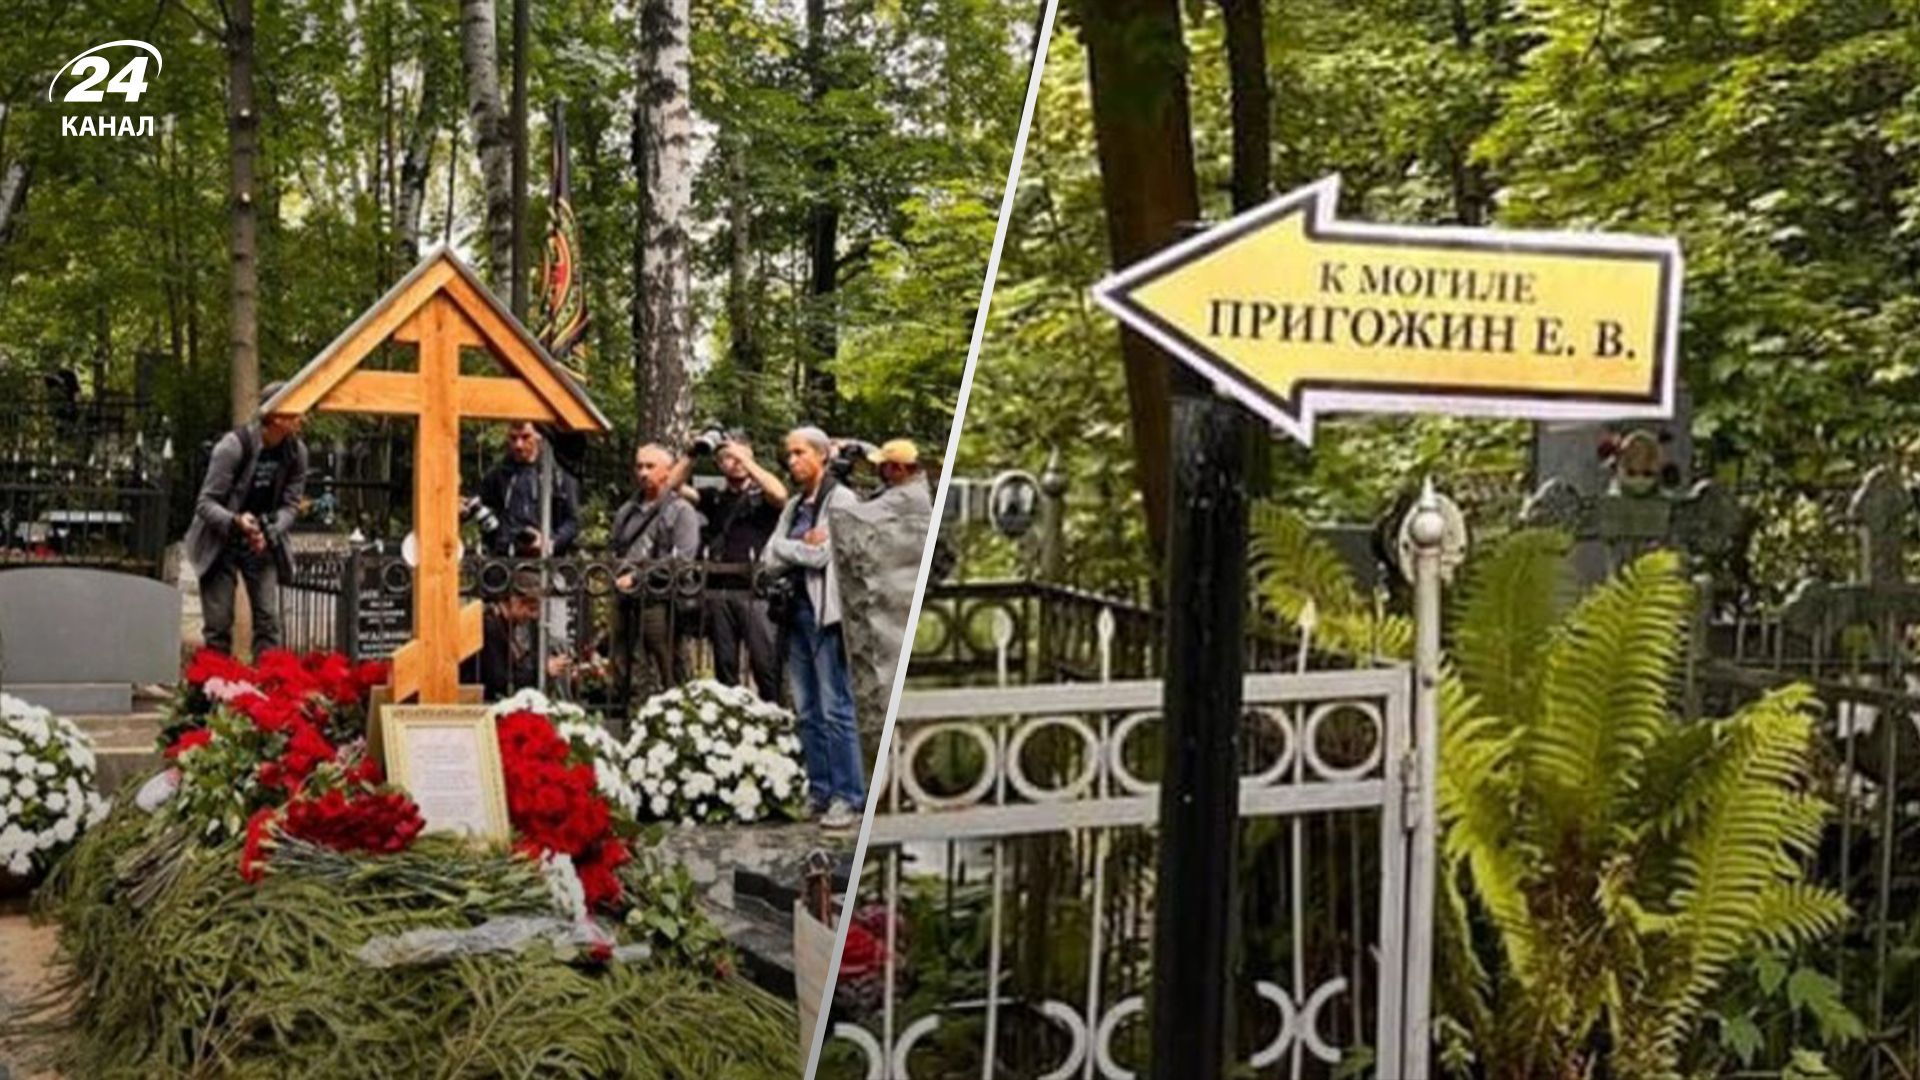 Пришли, угрожали расстрелять: СМИ узнали, что было после похорон Пригожина - 24 Канал